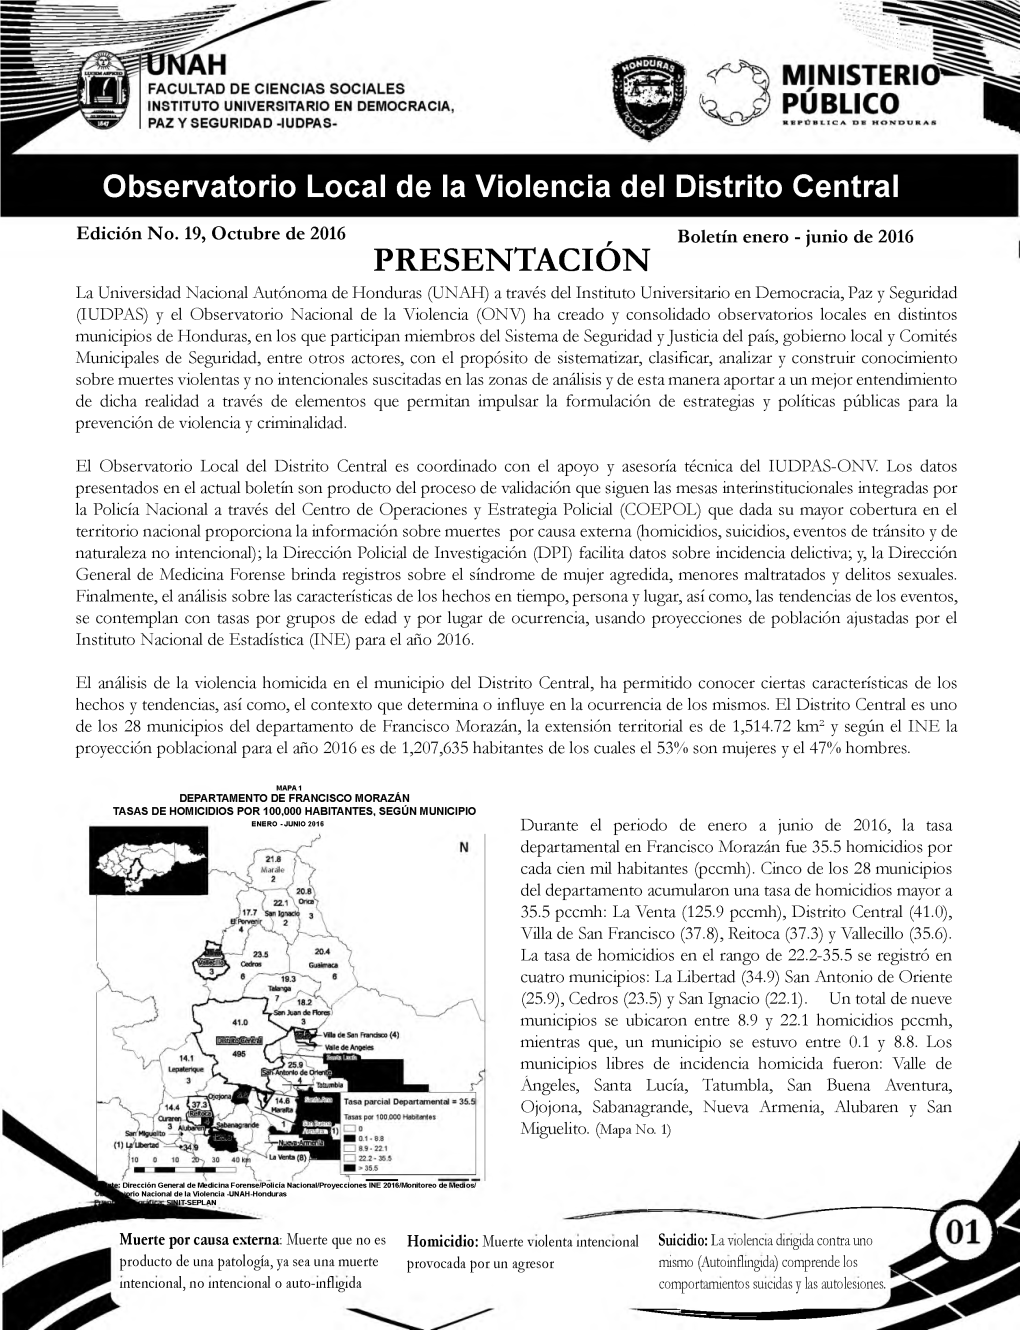 Observatorio Local De La Violencia En Distrito Central Enero a Junio 2016